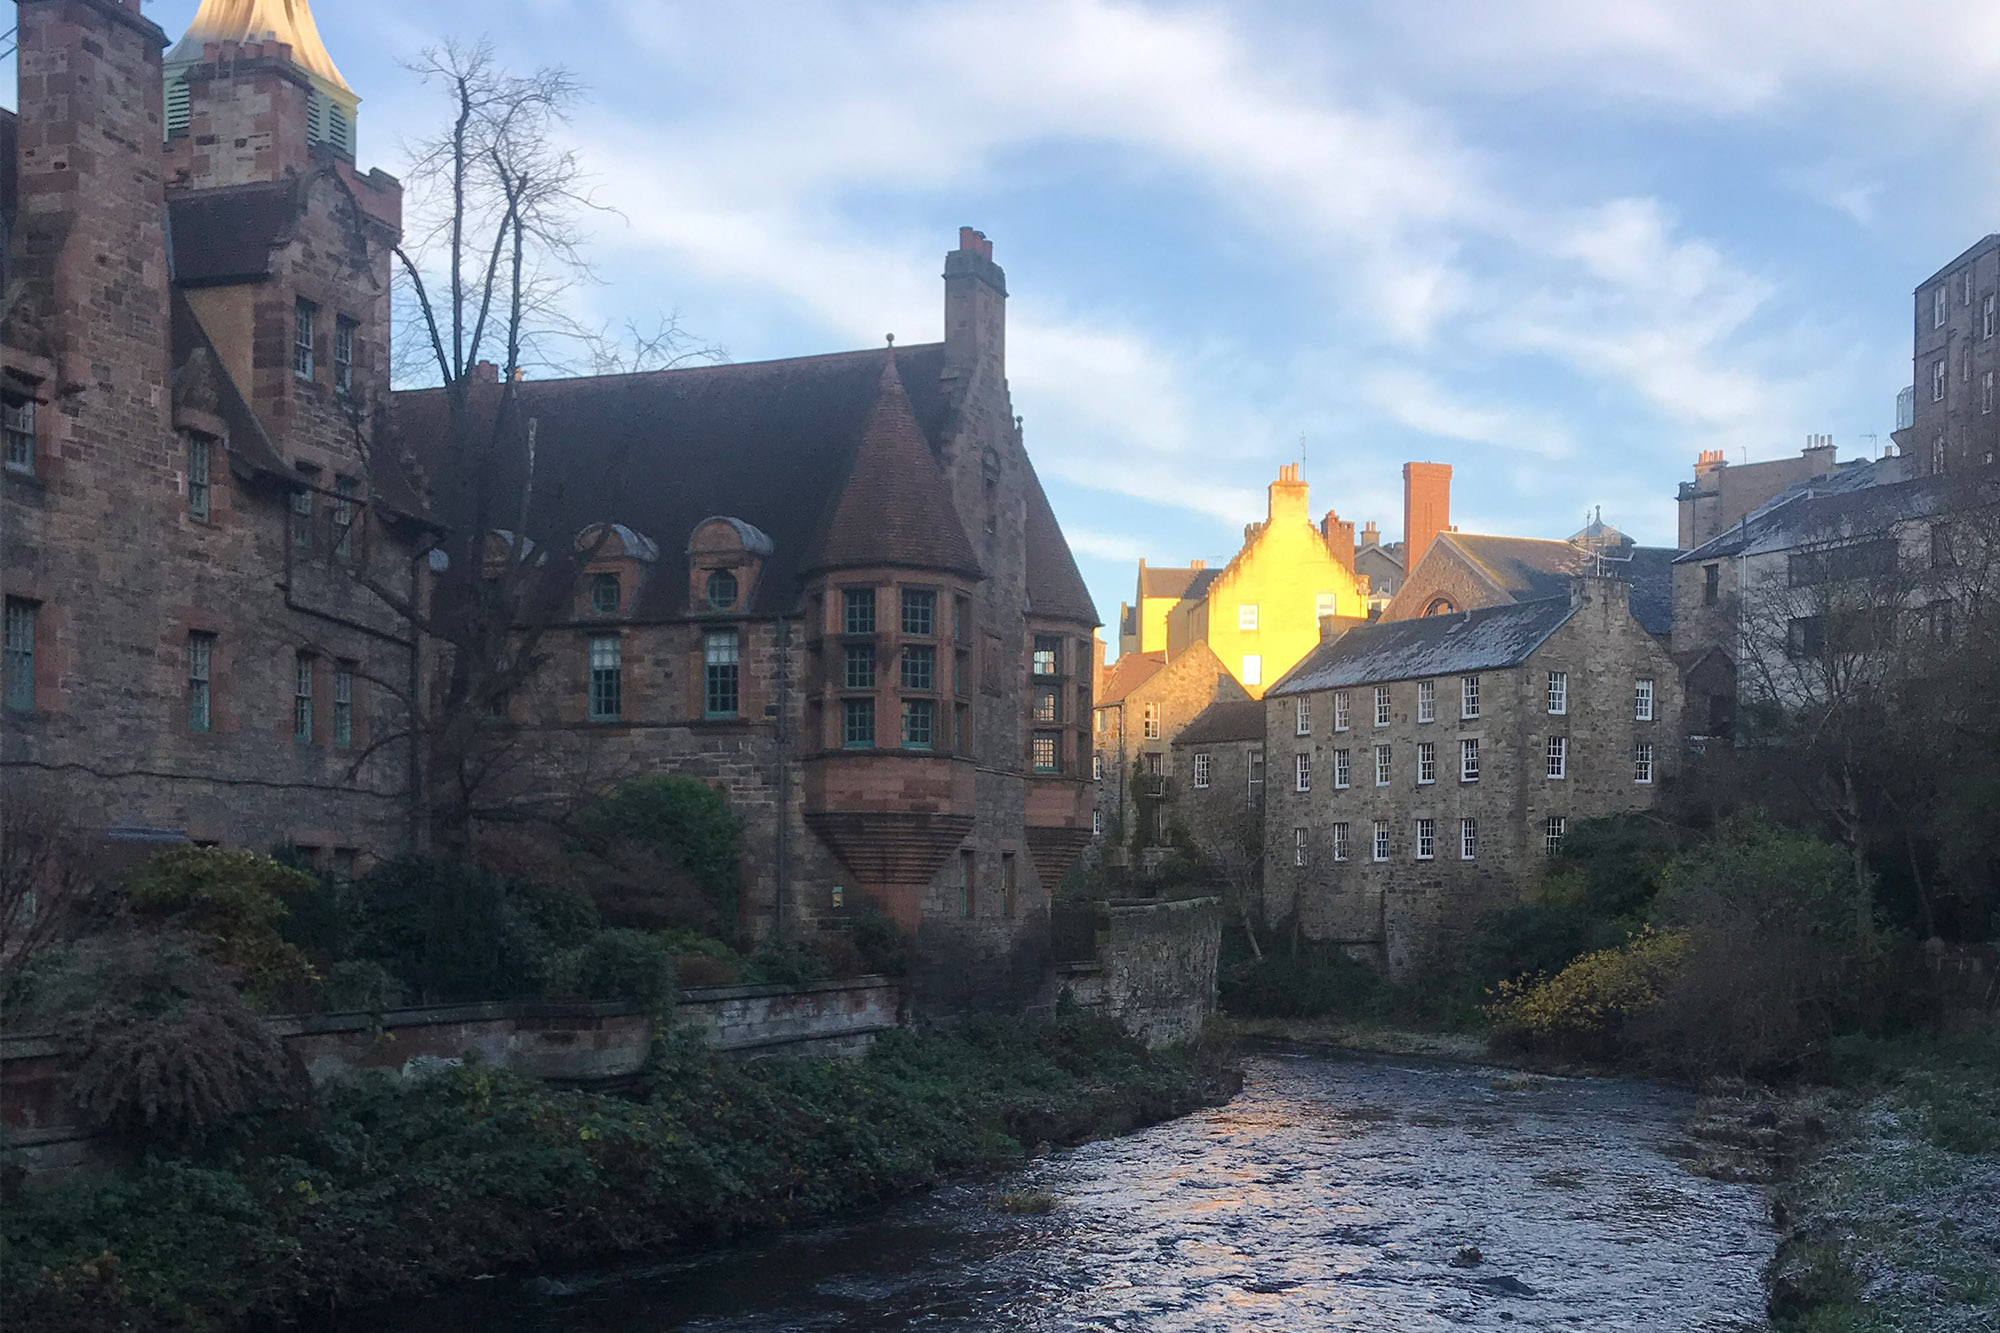 Dean's Village in Edinburgh, Scotland